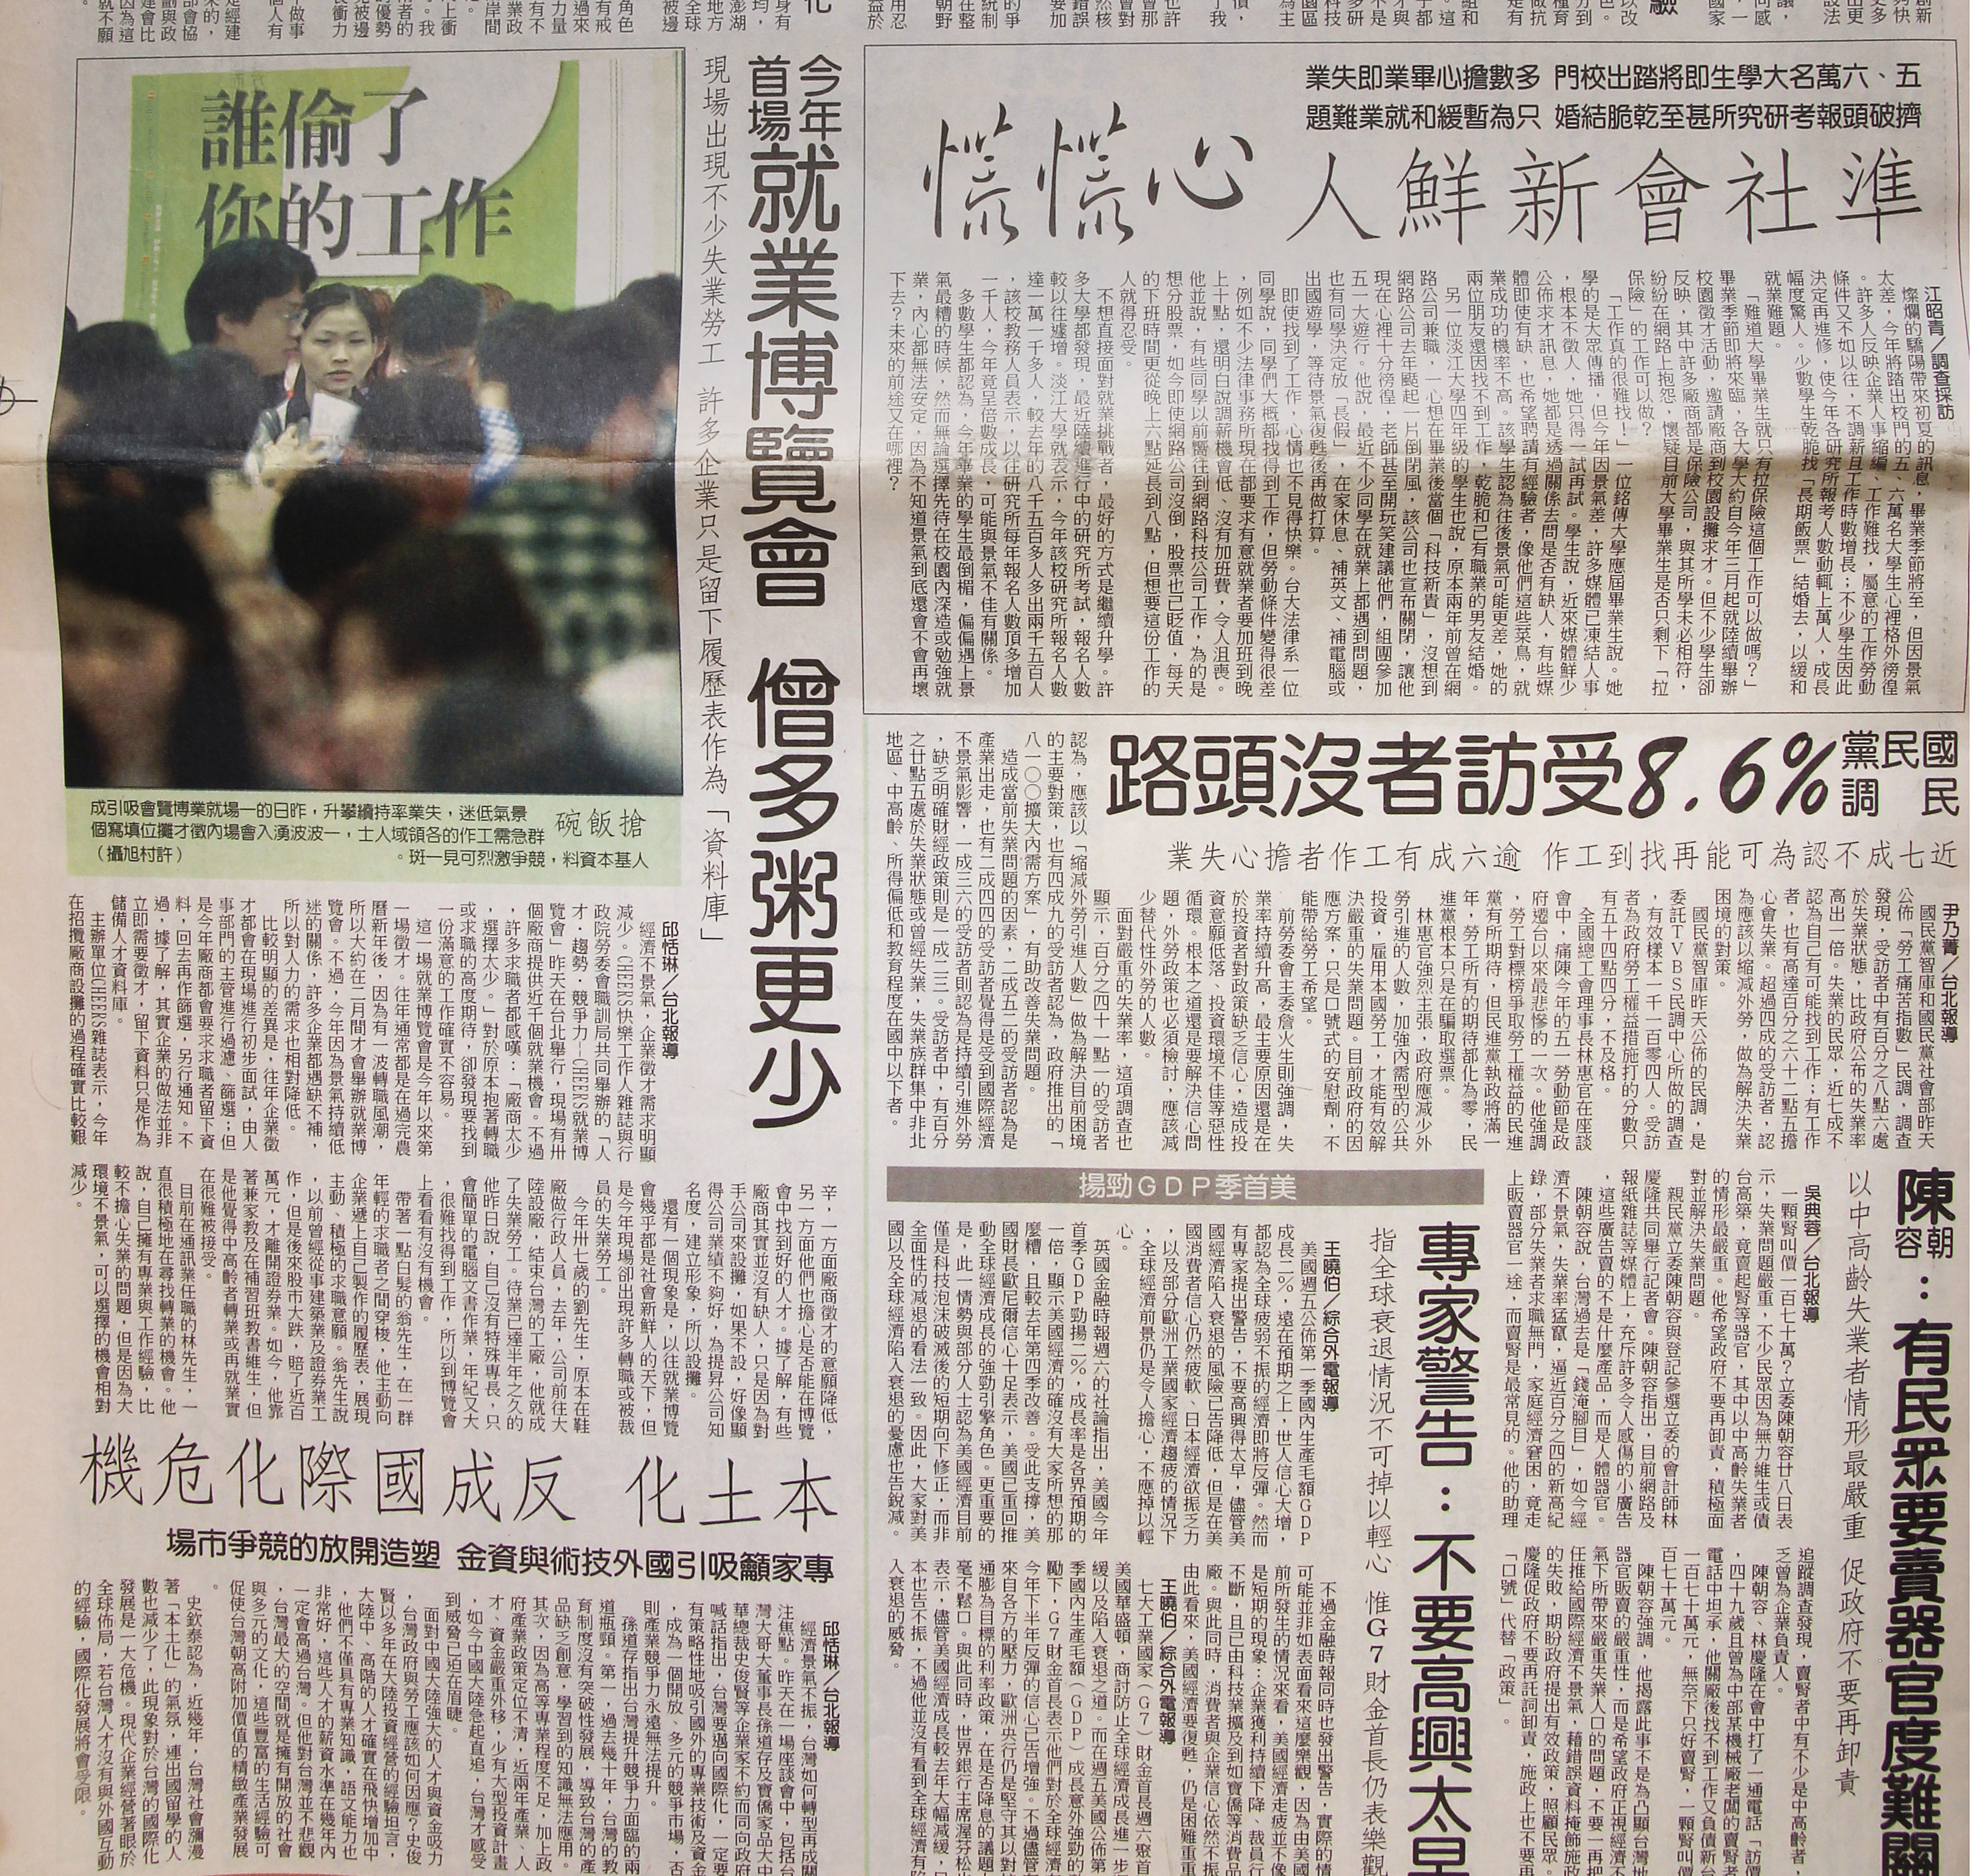 一份台湾报纸